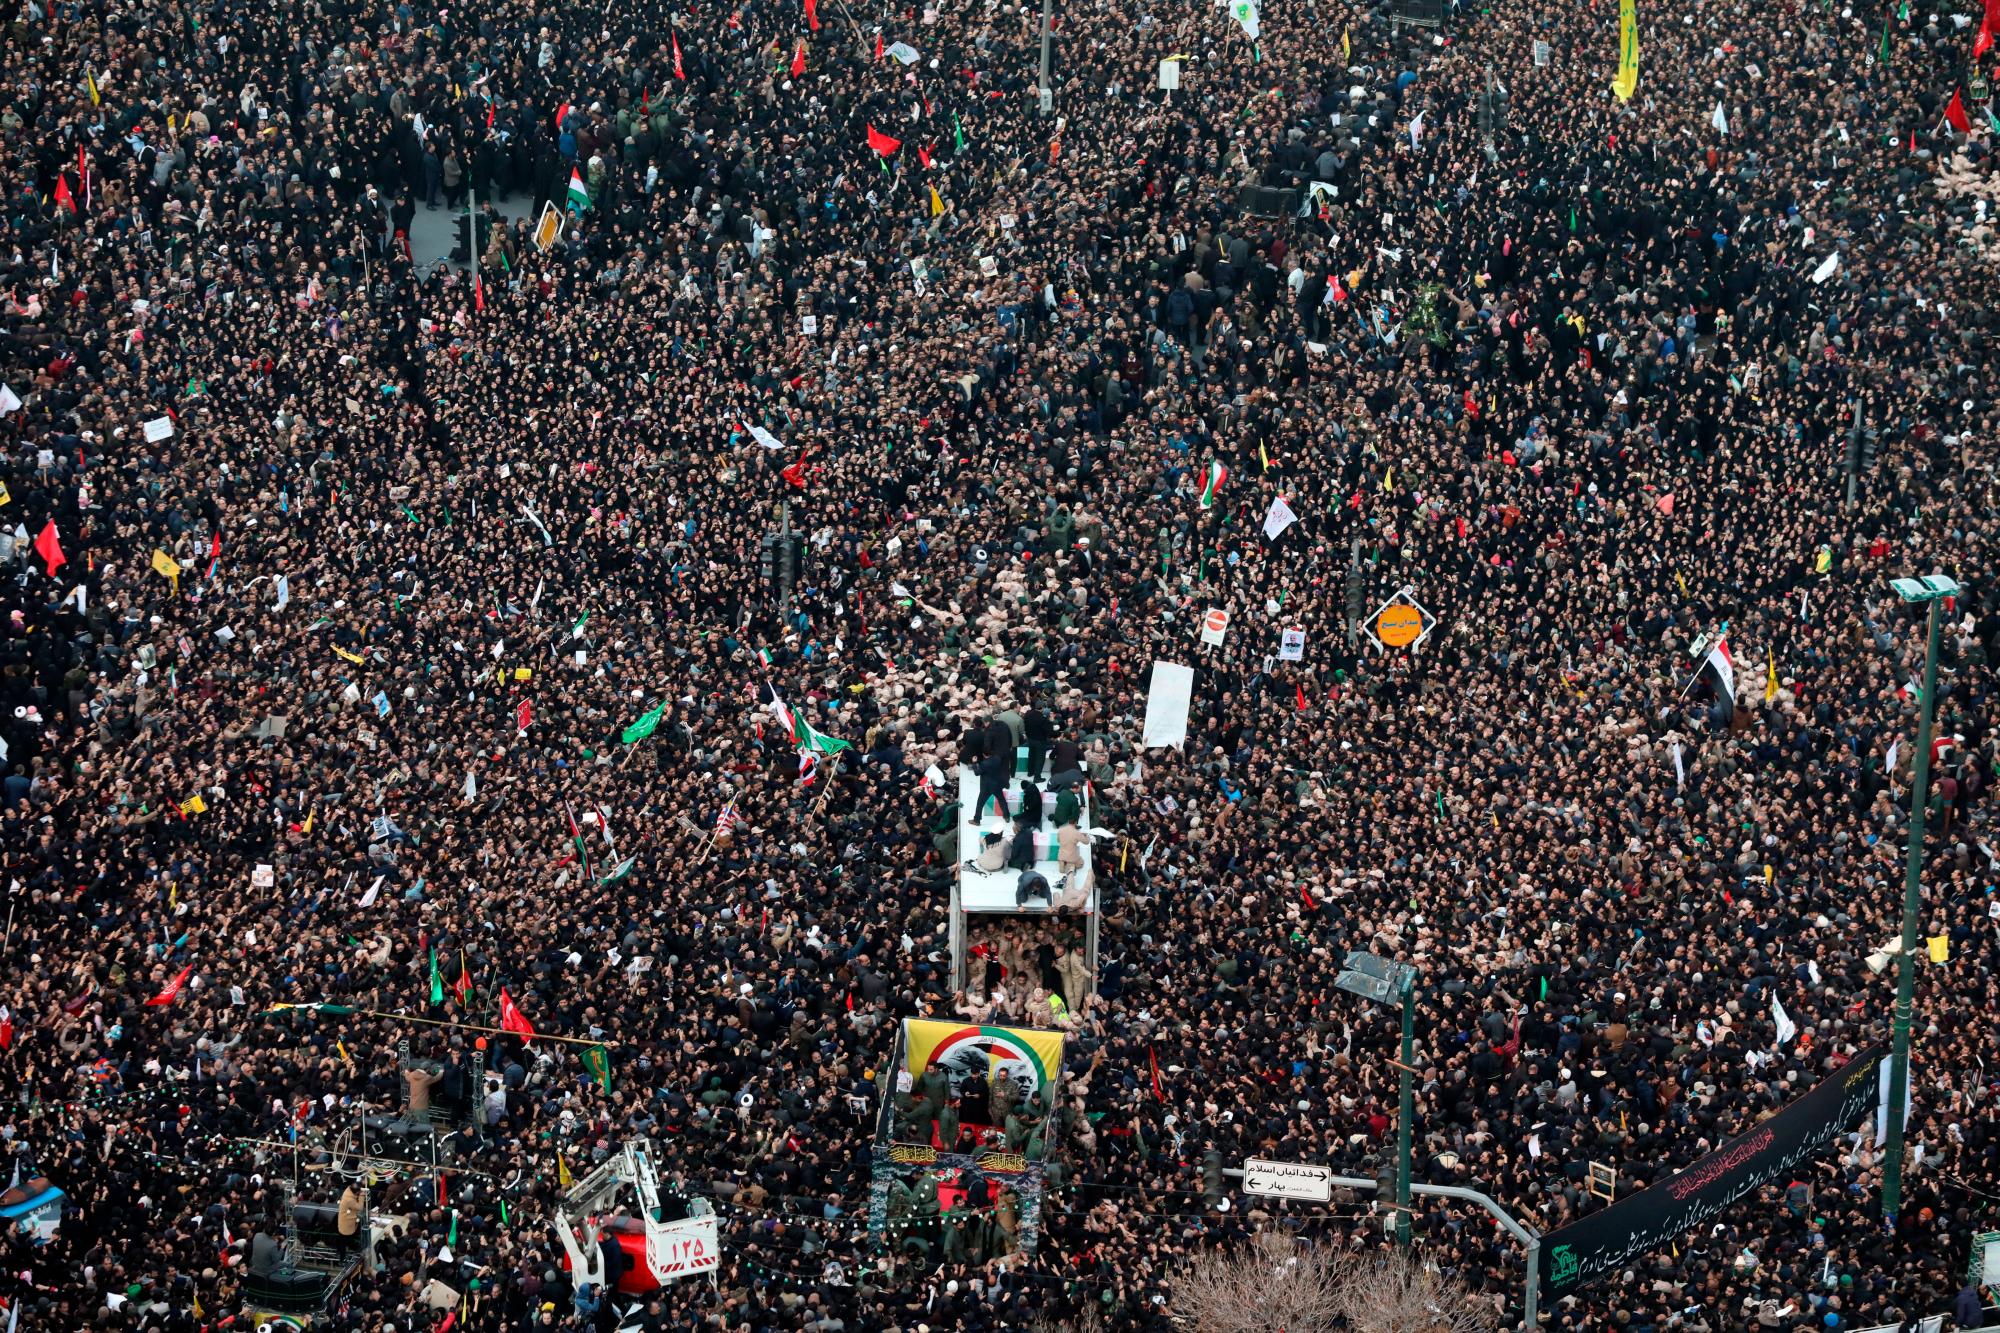 Ciudadanos iraníes portan el féretro del comandante de la Fuerza Quds de los Guardianes de la Revolución iraní (IRGC), el general Qasem Soleimaní, en la ciudad de Mashhad, Irán, este domingo. El cuerpo del poderoso comandante de la Guardia Revolucionaria iraní Qasem Soleimaní, asesinado por Estados Unidos en Irak, llegó este domingo a Irán, donde se celebran ceremonias fúnebres en varias ciudades. Soleimaní, fallecido a los 63 años, era comandante de la Fuarza Quds, encargada de las operaciones fuera de Irán de los Guardianes de la Revolución, y estado actual sobre el terreno en Siria y en Irak, supervisando las milicias respaldadas por Teherán en ambos países árabes.